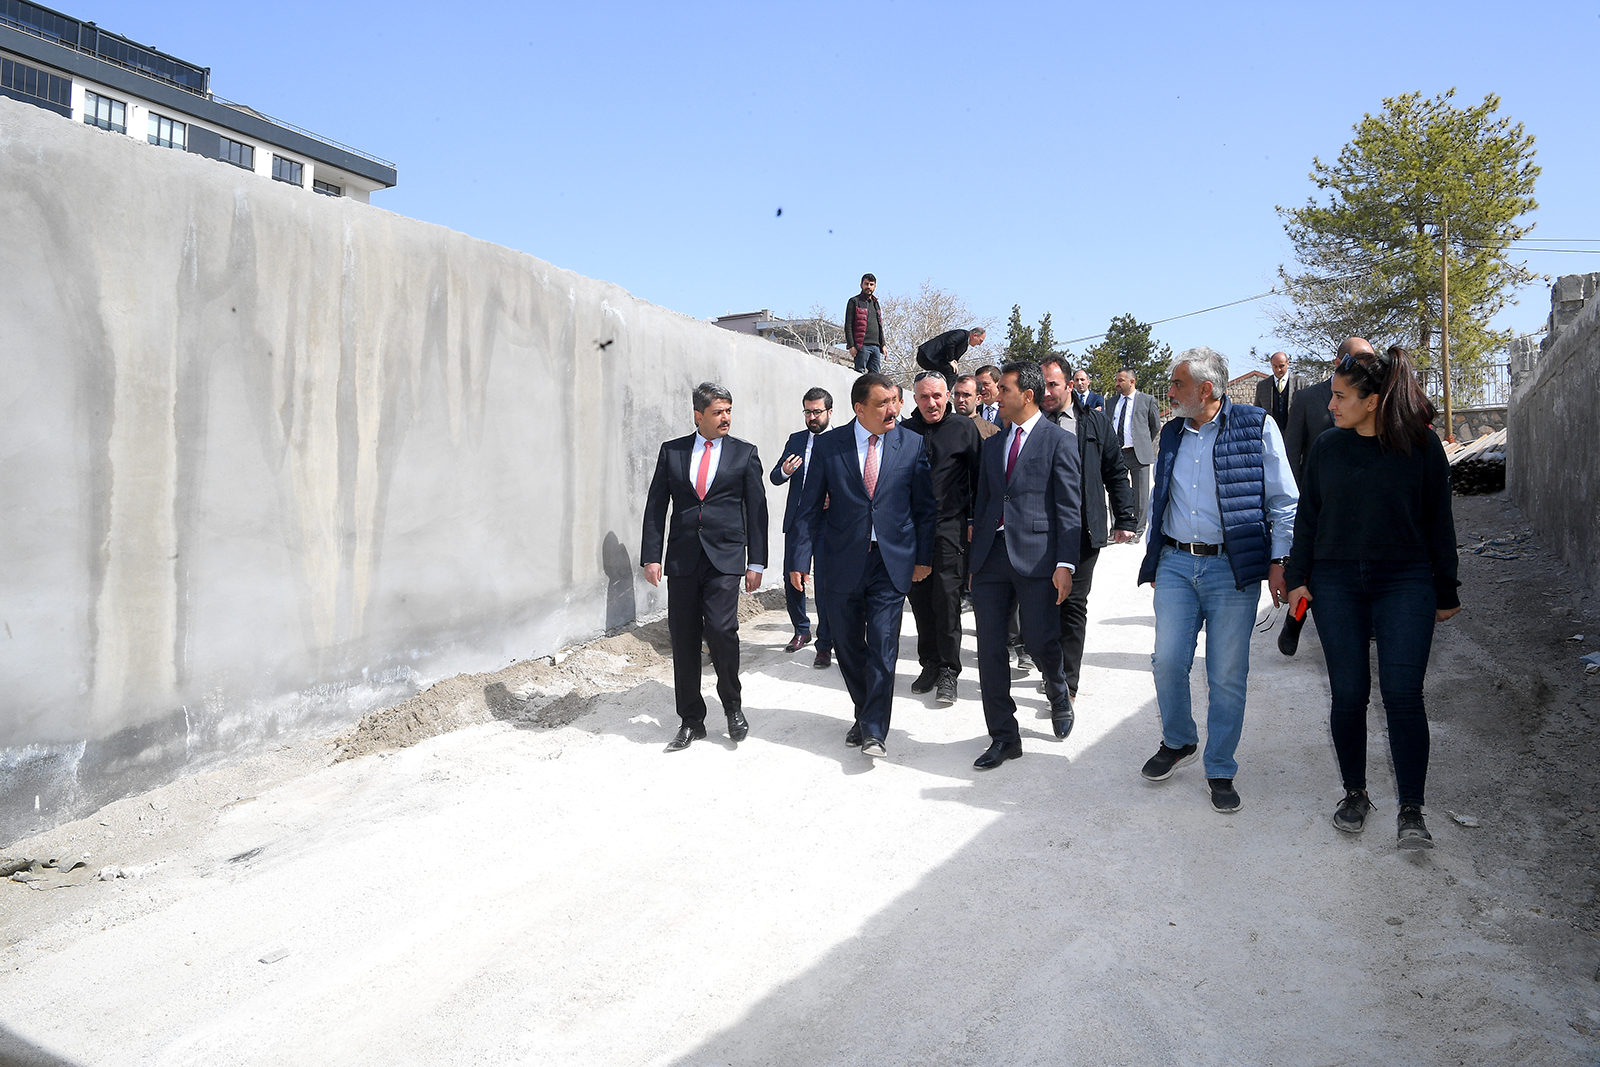 Malatya Büyükşehir Belediye Başkanı Selahattin Gürkan kaba inşaat çalışmaları devam eden Millet Kütüphanesi altındaki otopark kısmında incelemelerde bulunarak, yapılan çalışmalar hakkında bilgiler aktardı.